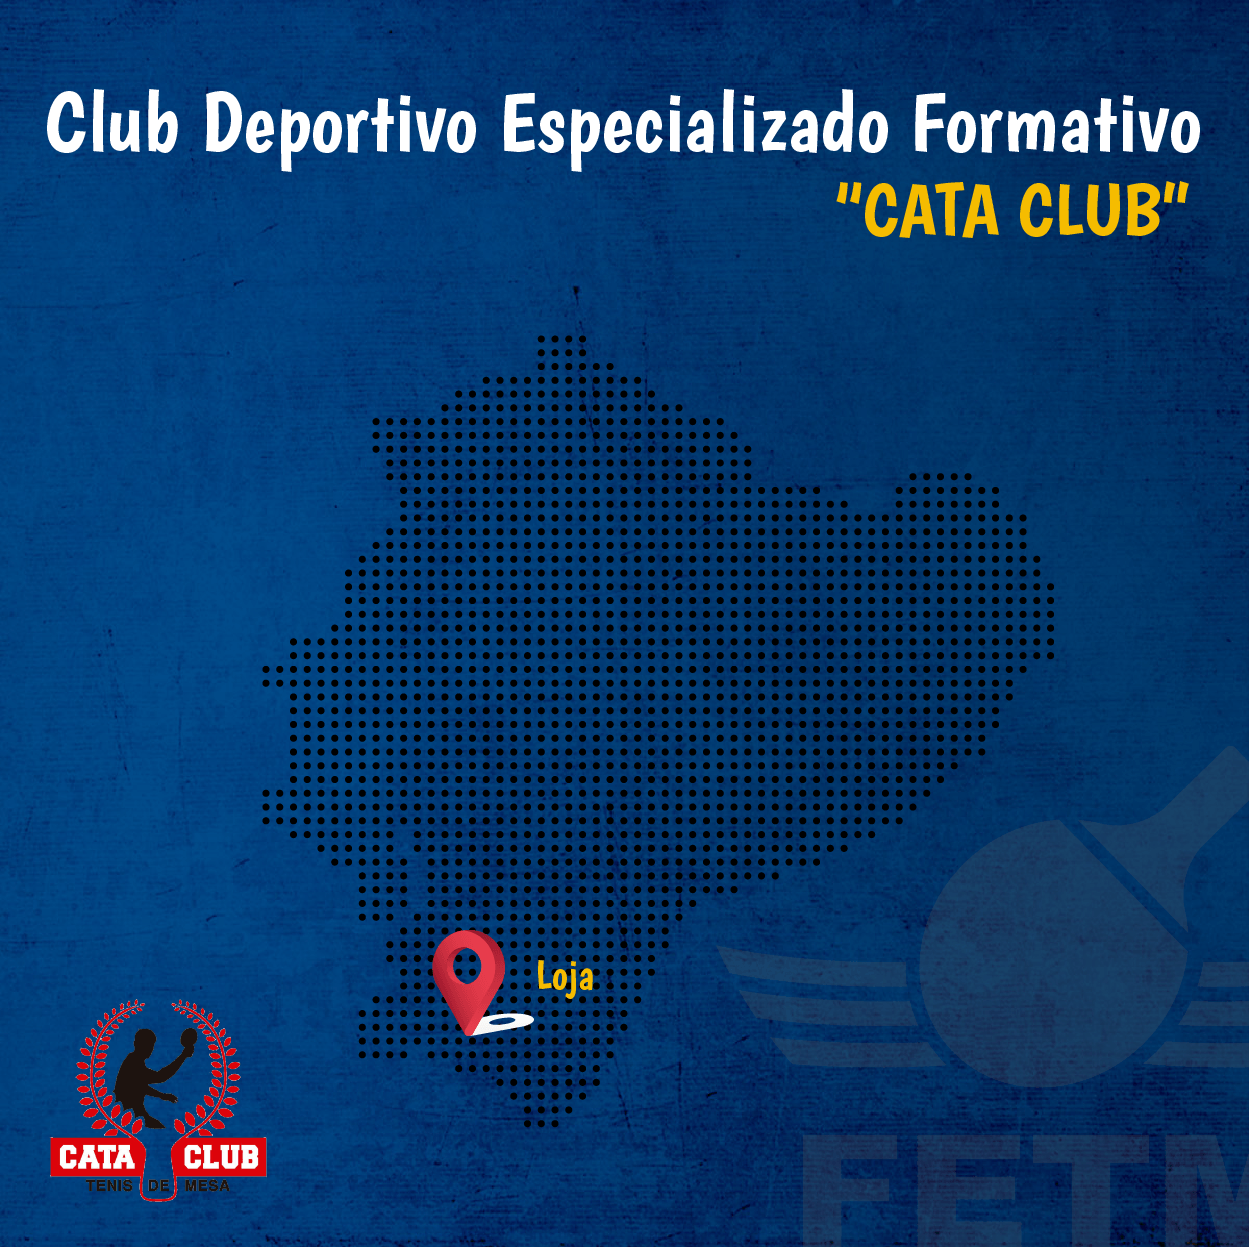 CLUB DEPORTIVO FORMATIVO ESPECIALIZADO DE TENIS DE MESA “CATA CLUB”